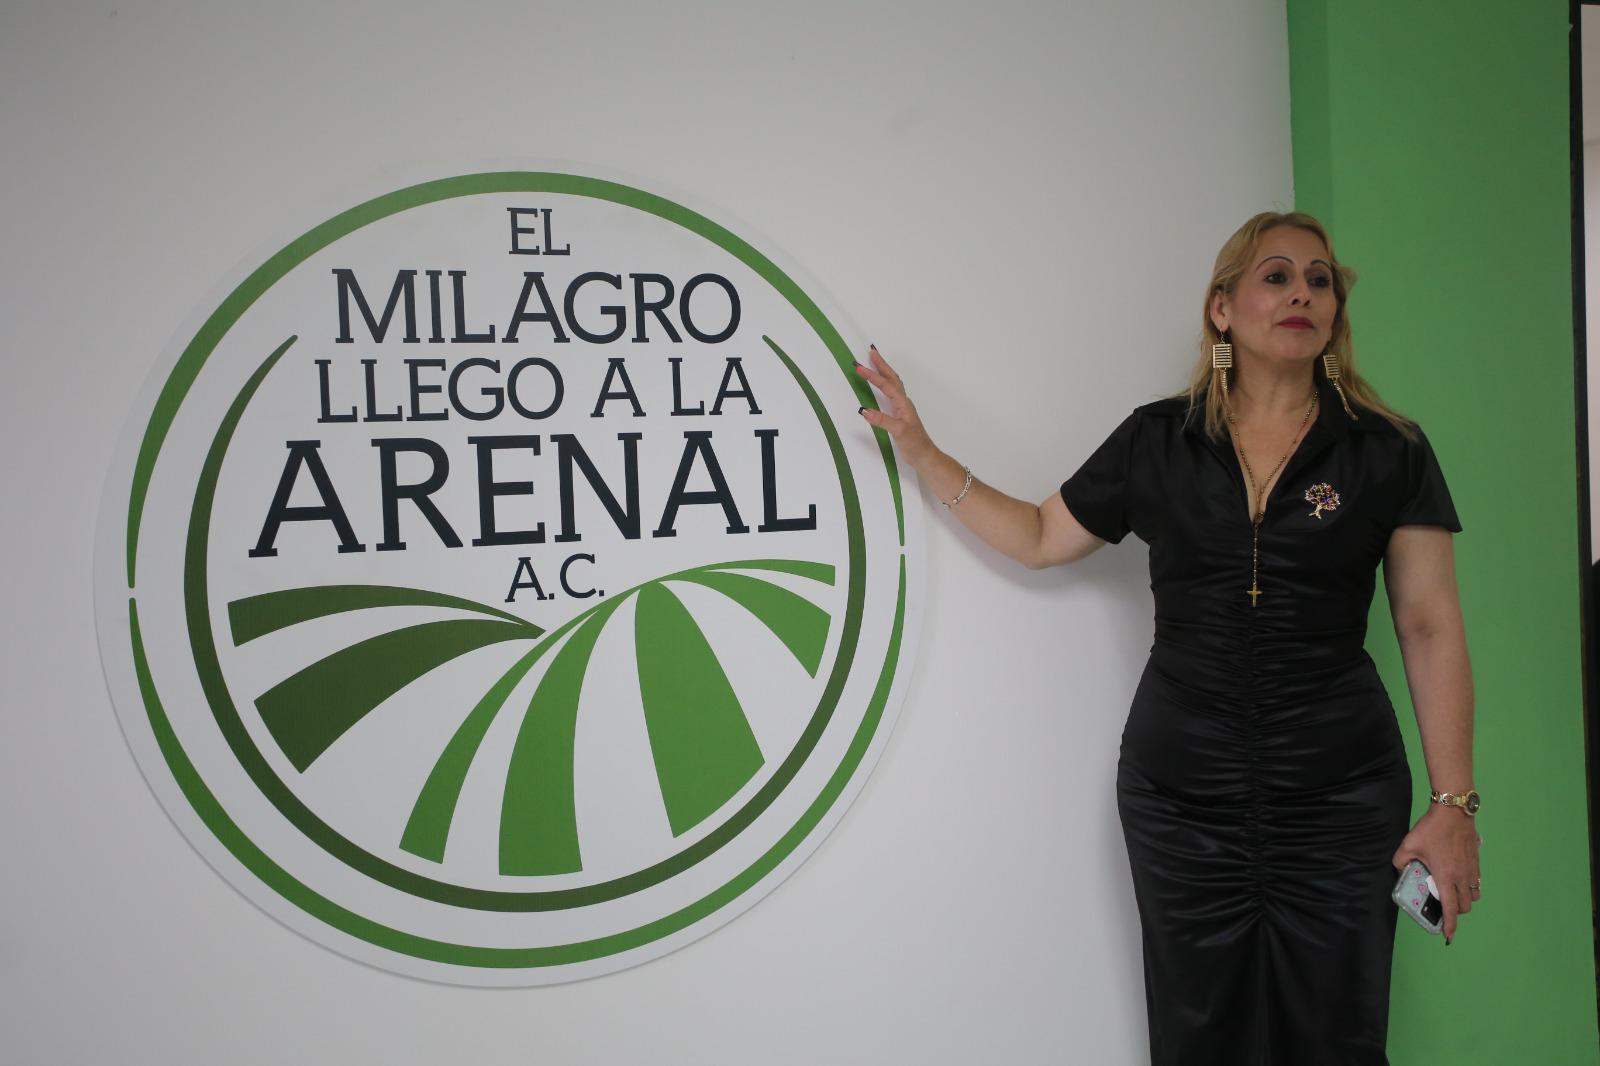 $!Inauguran Oficina de asociación civil El Milagro Llegó al Arenal, en Mazatlán